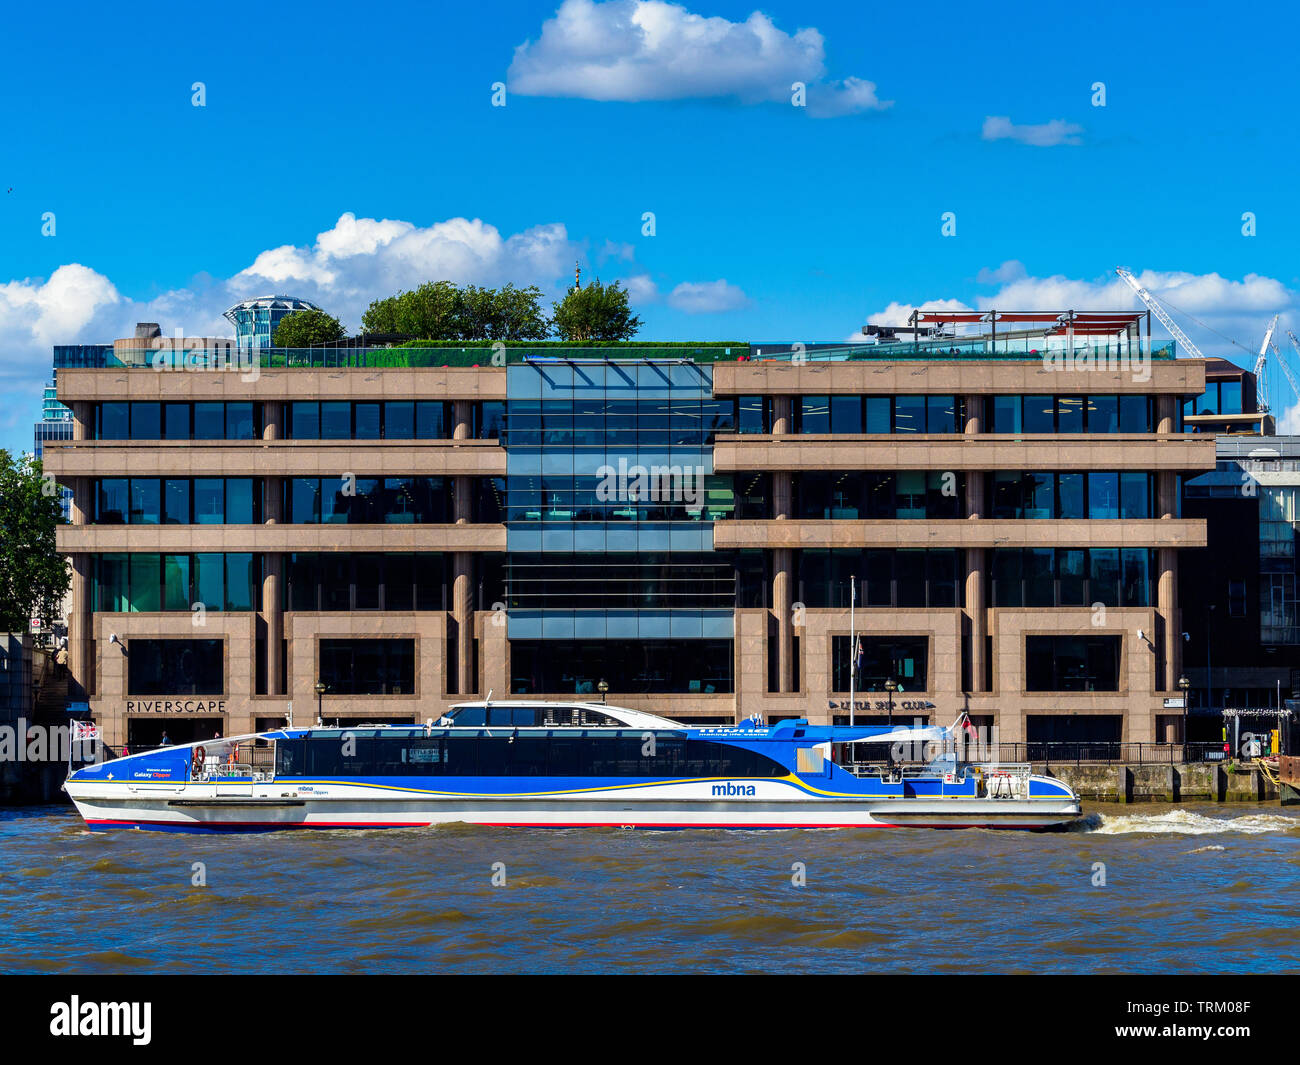 Edificio Riverscape Londra - rinnovato degli anni ottanta ufficio edificio sulle rive del fiume Tamigi, ristrutturazione architetti Barr Gazetas. Thames Clipper. Foto Stock